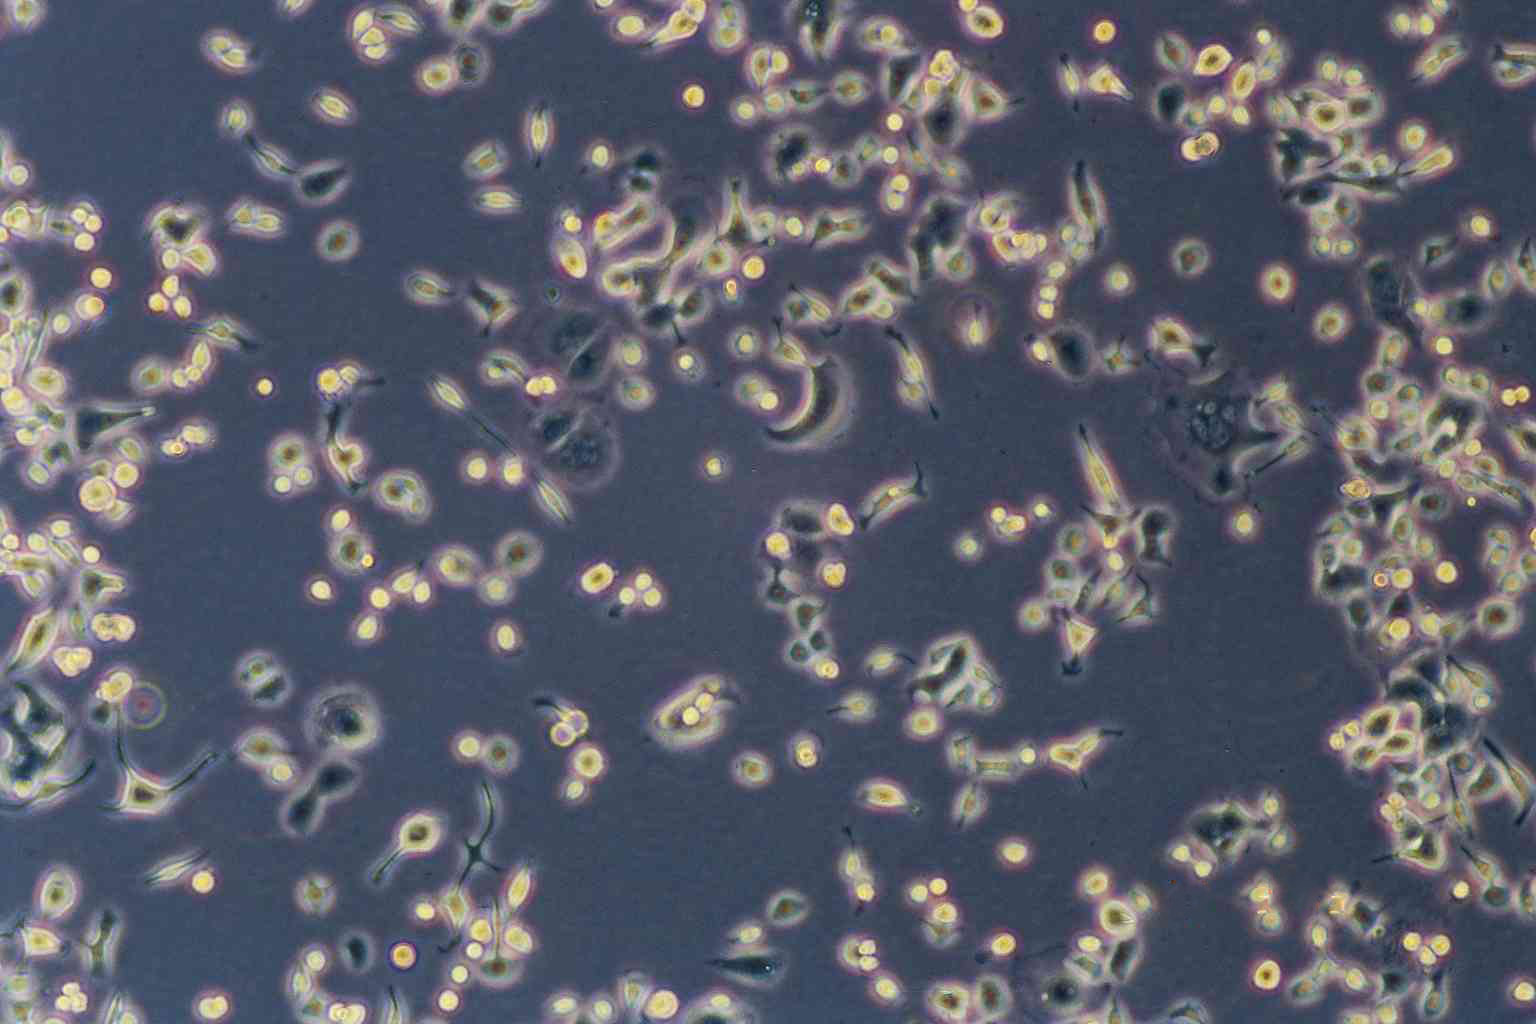 NuTu-19 epithelioid cells大鼠卵巢癌细胞系